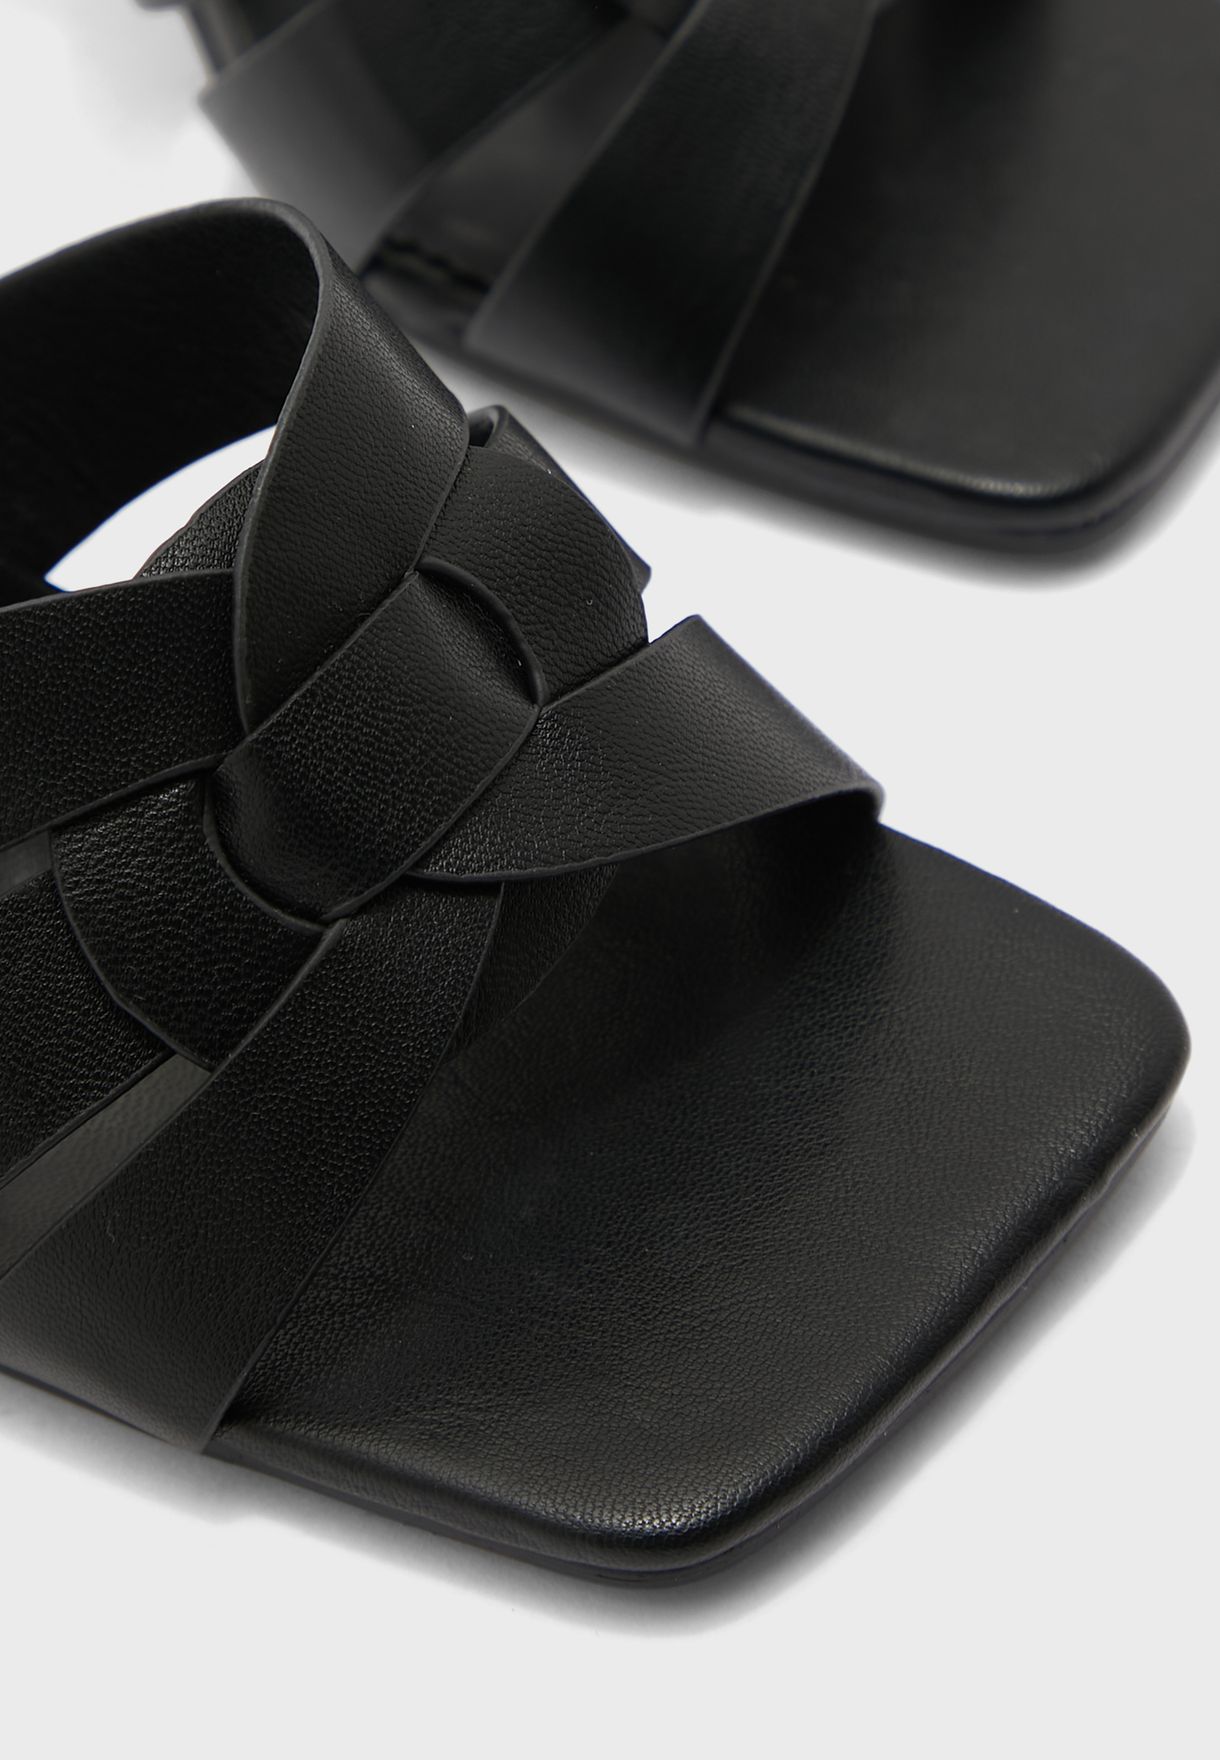 Woven Design Strap Stiletto Mule Sandal